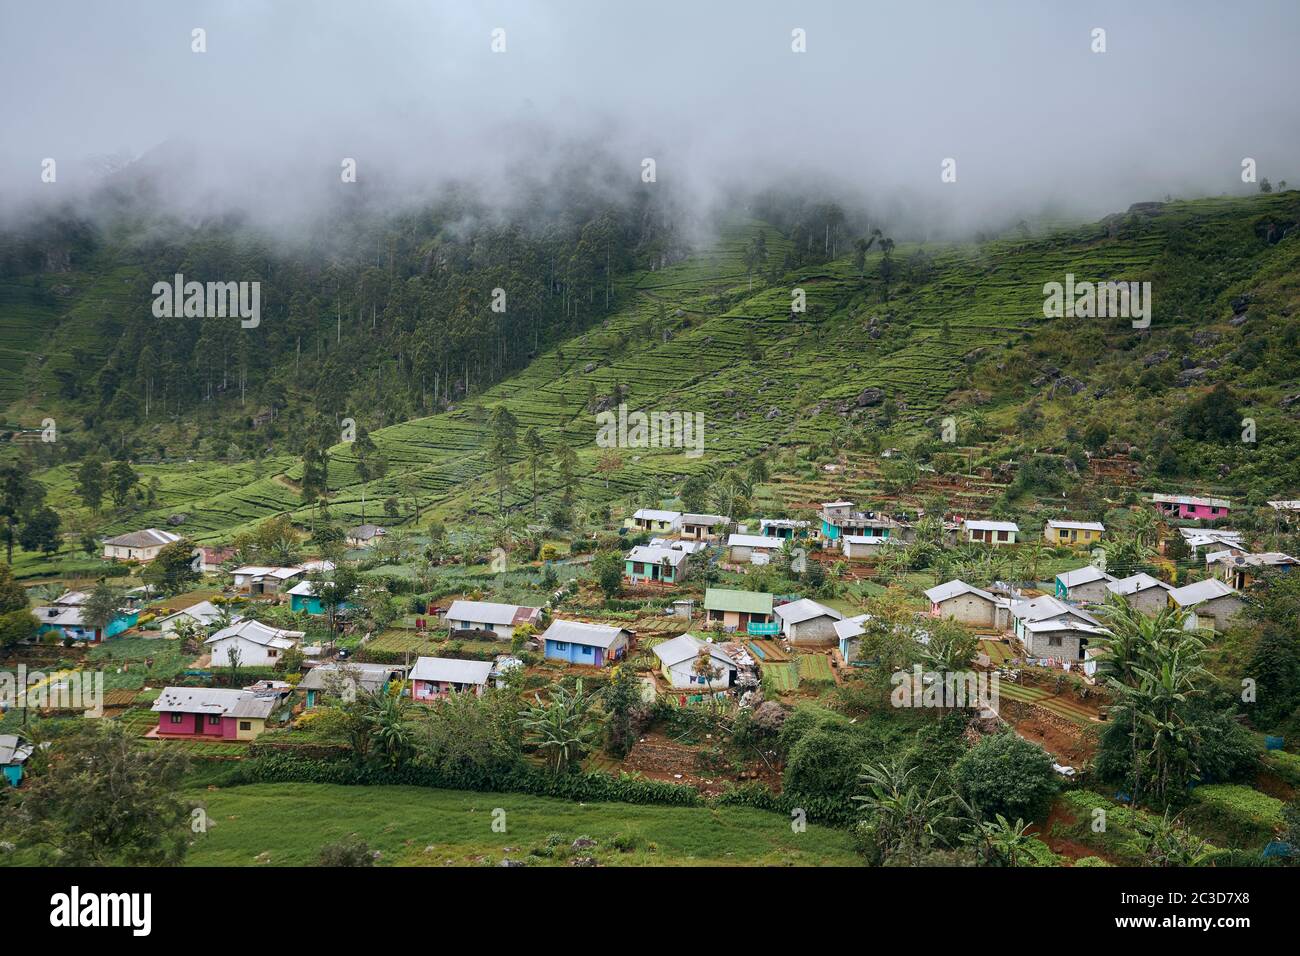 Village contre plantation de thé dans les nuages. Paysage agricole au Sri Lanka. Banque D'Images